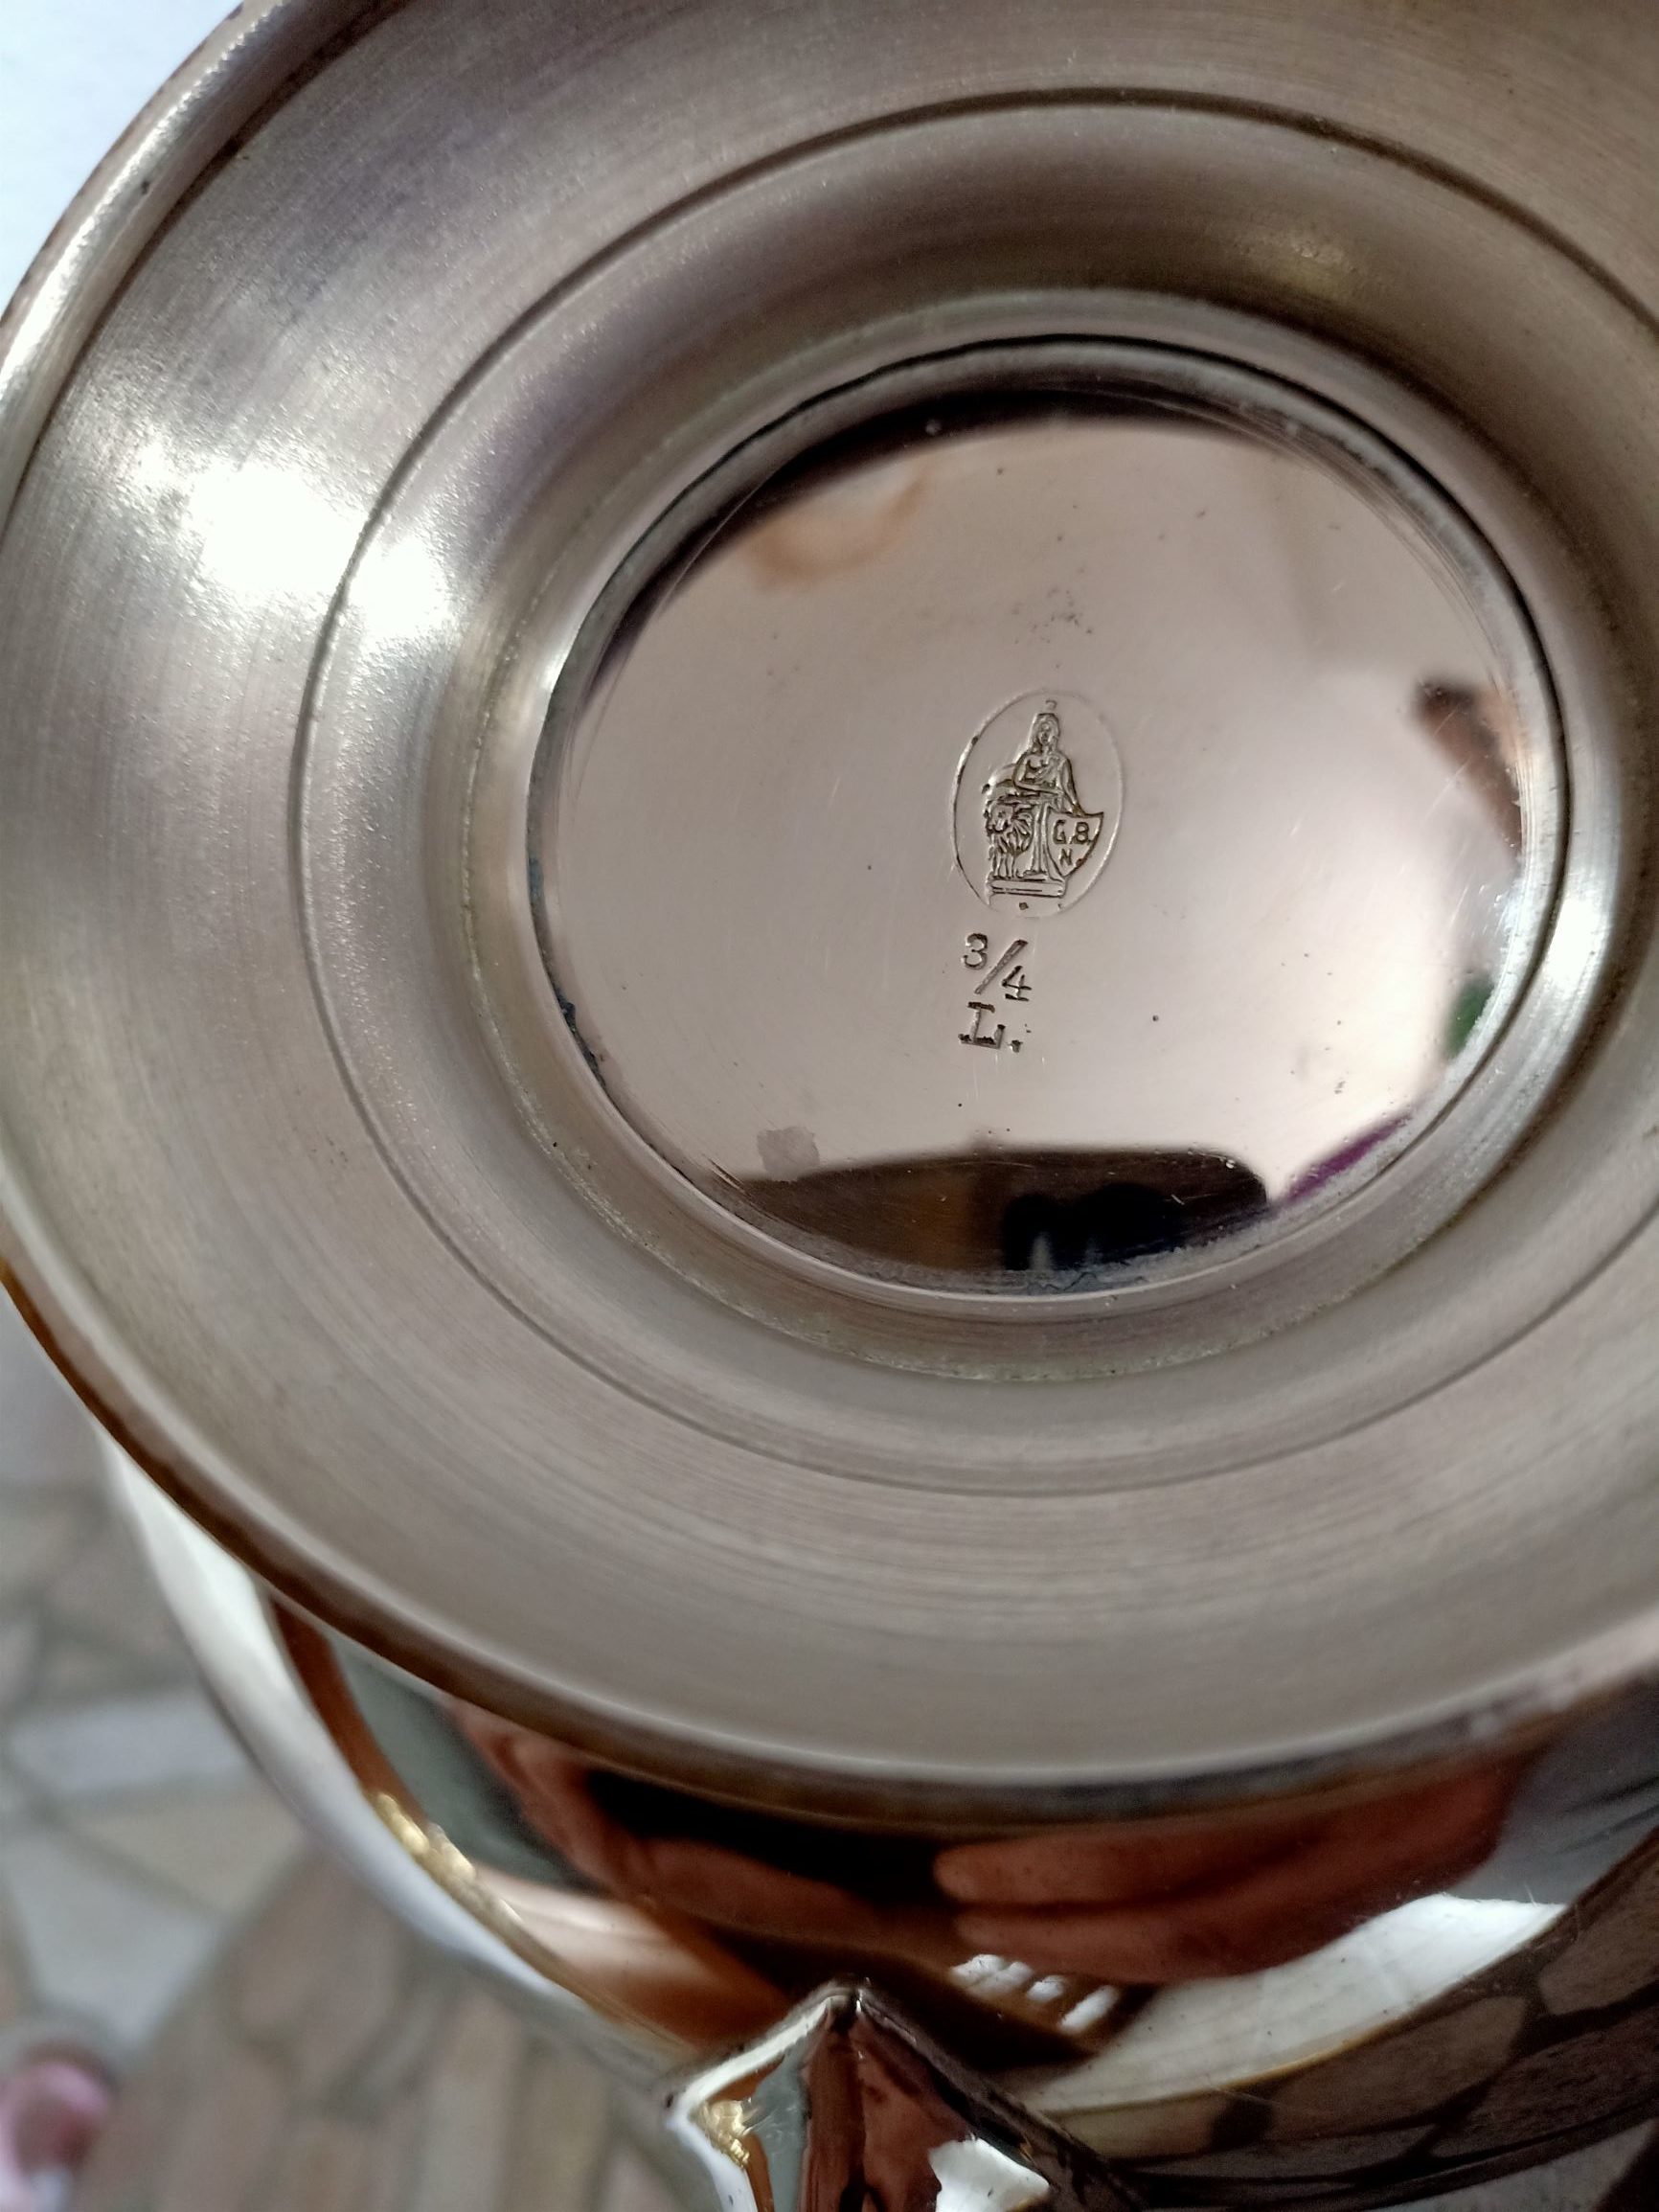 Metal jug silver-colored – Metallkanne silberfarben